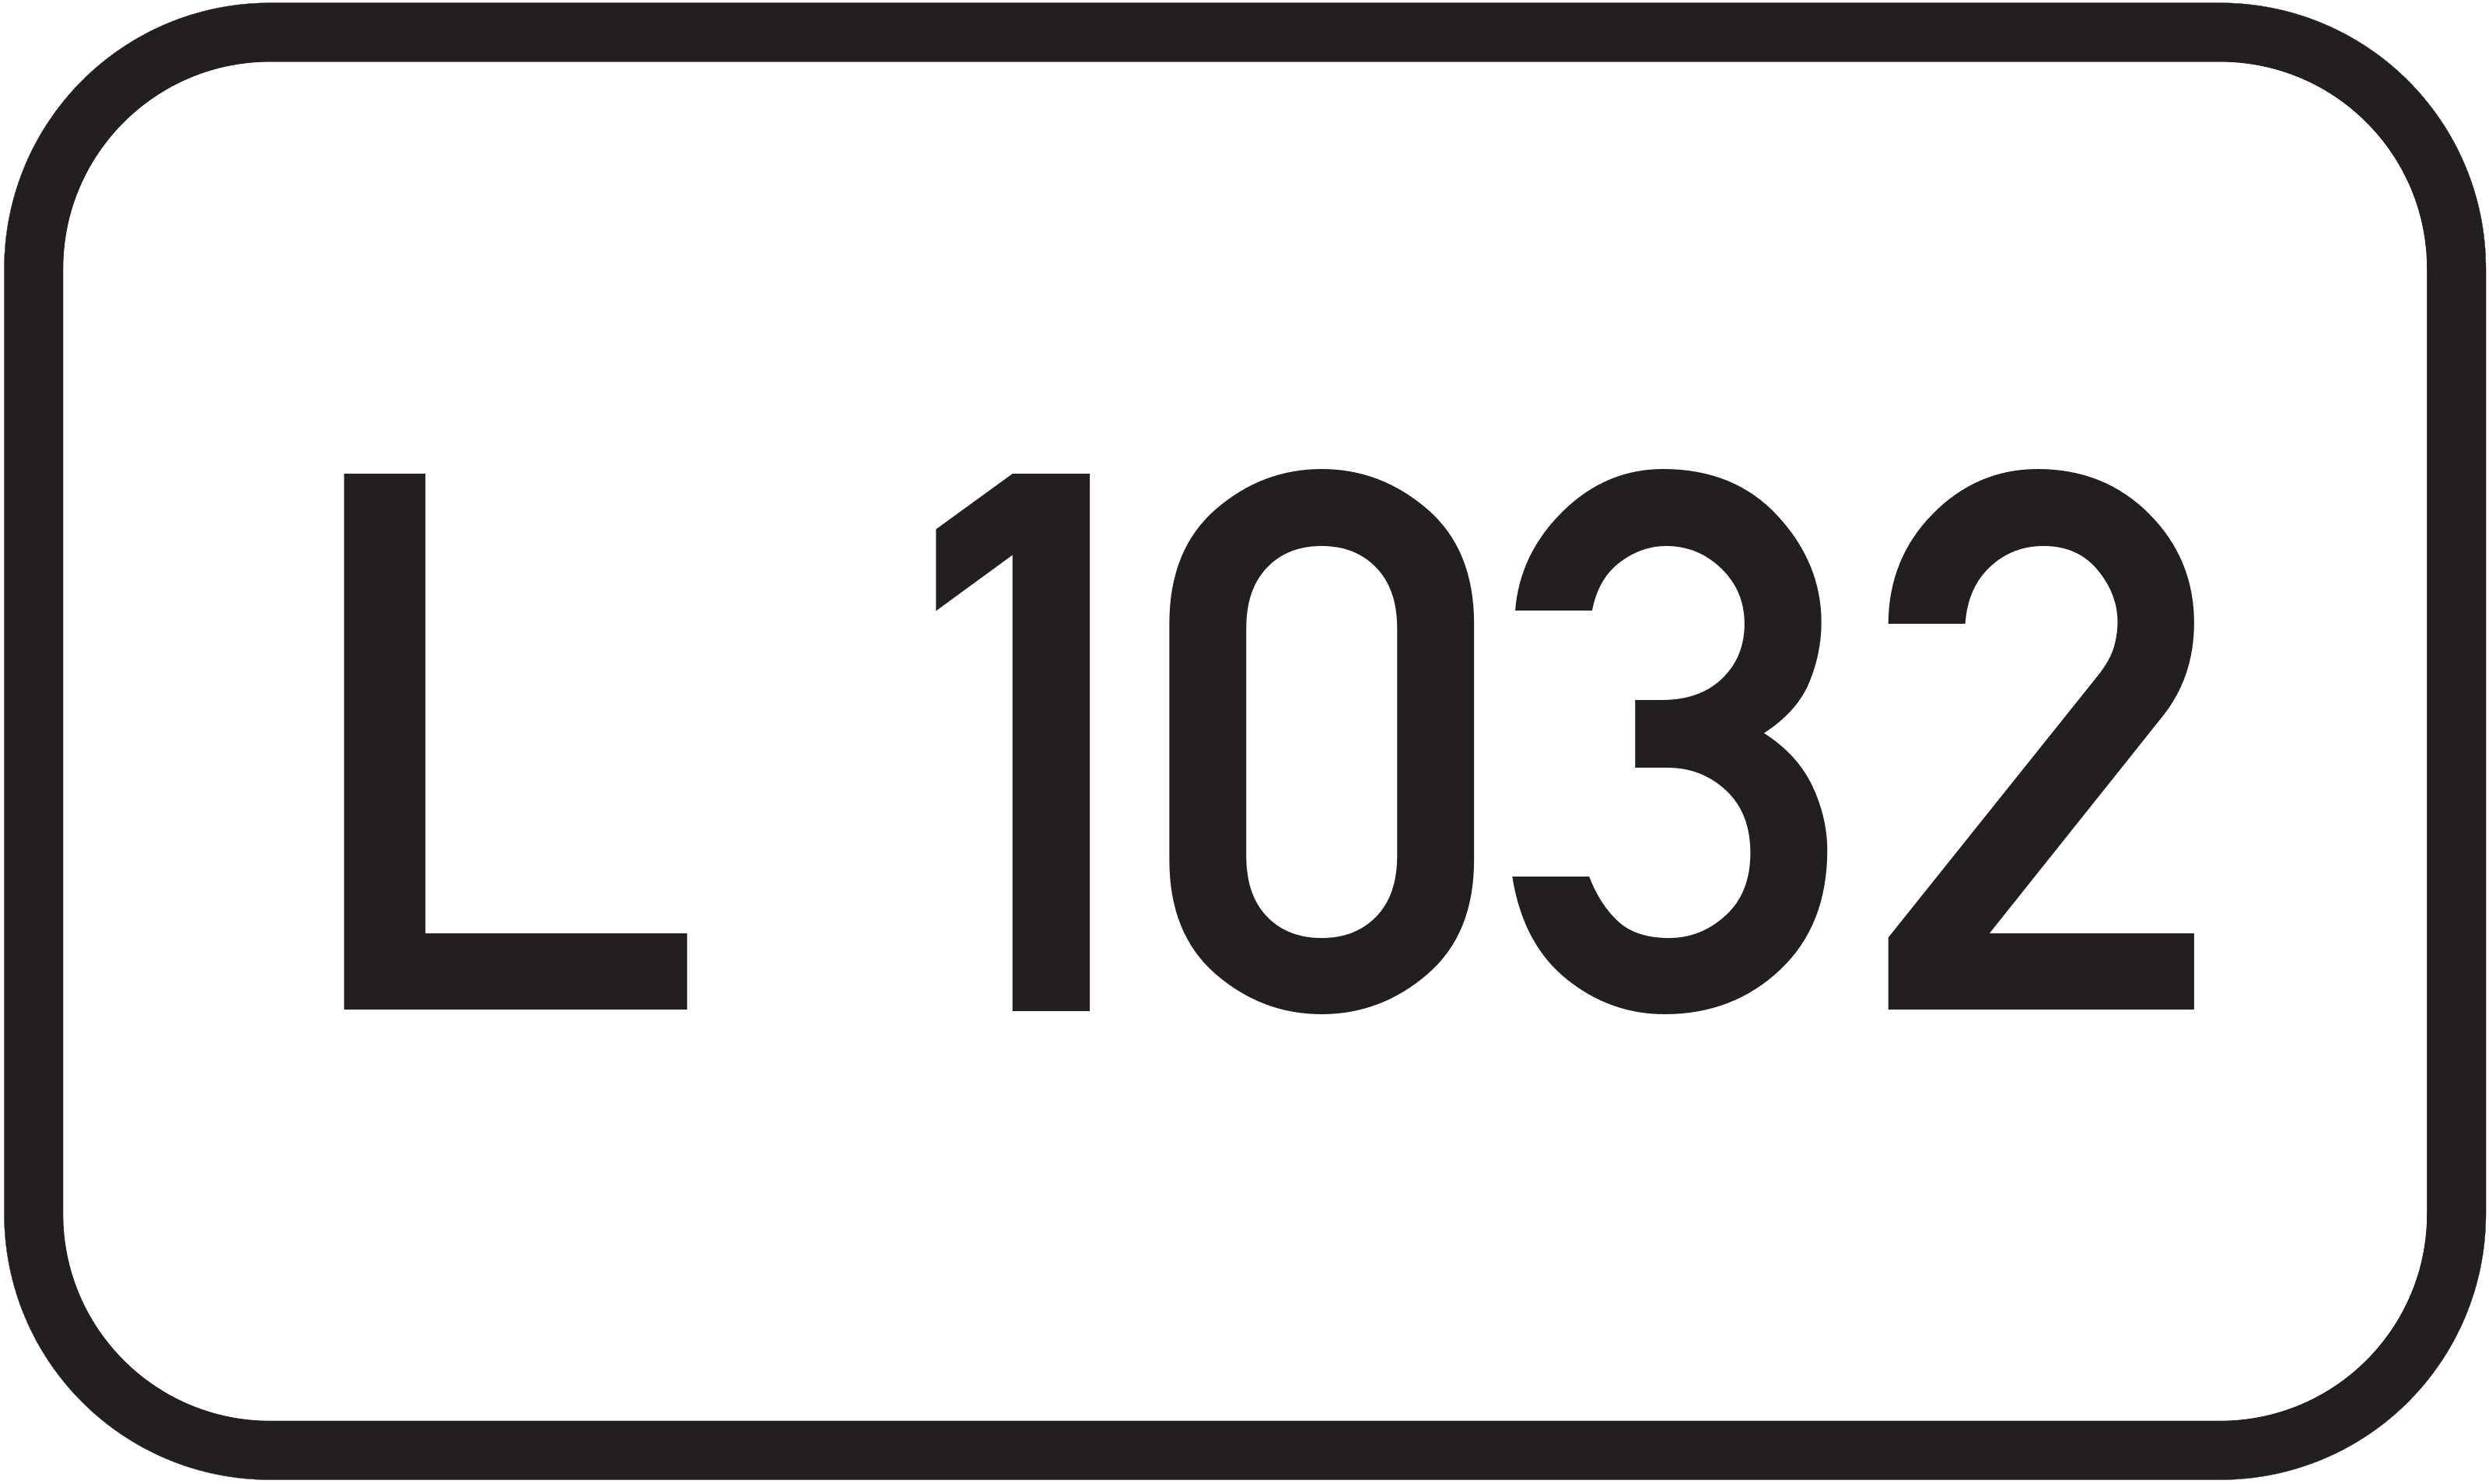 Landesstraße L 1032